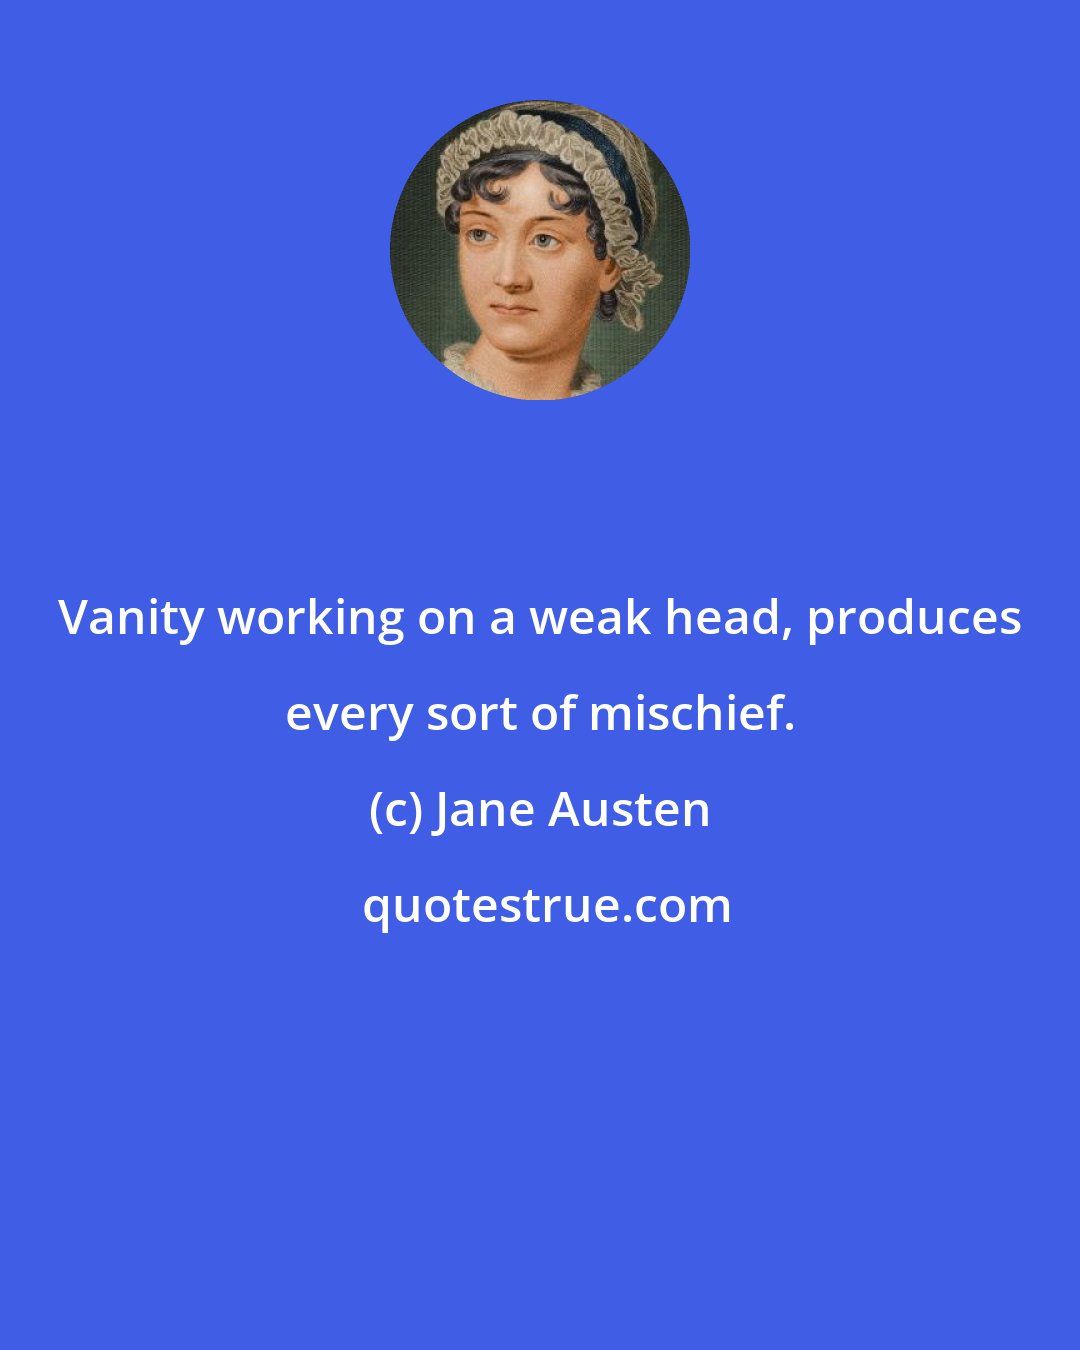 Jane Austen: Vanity working on a weak head, produces every sort of mischief.